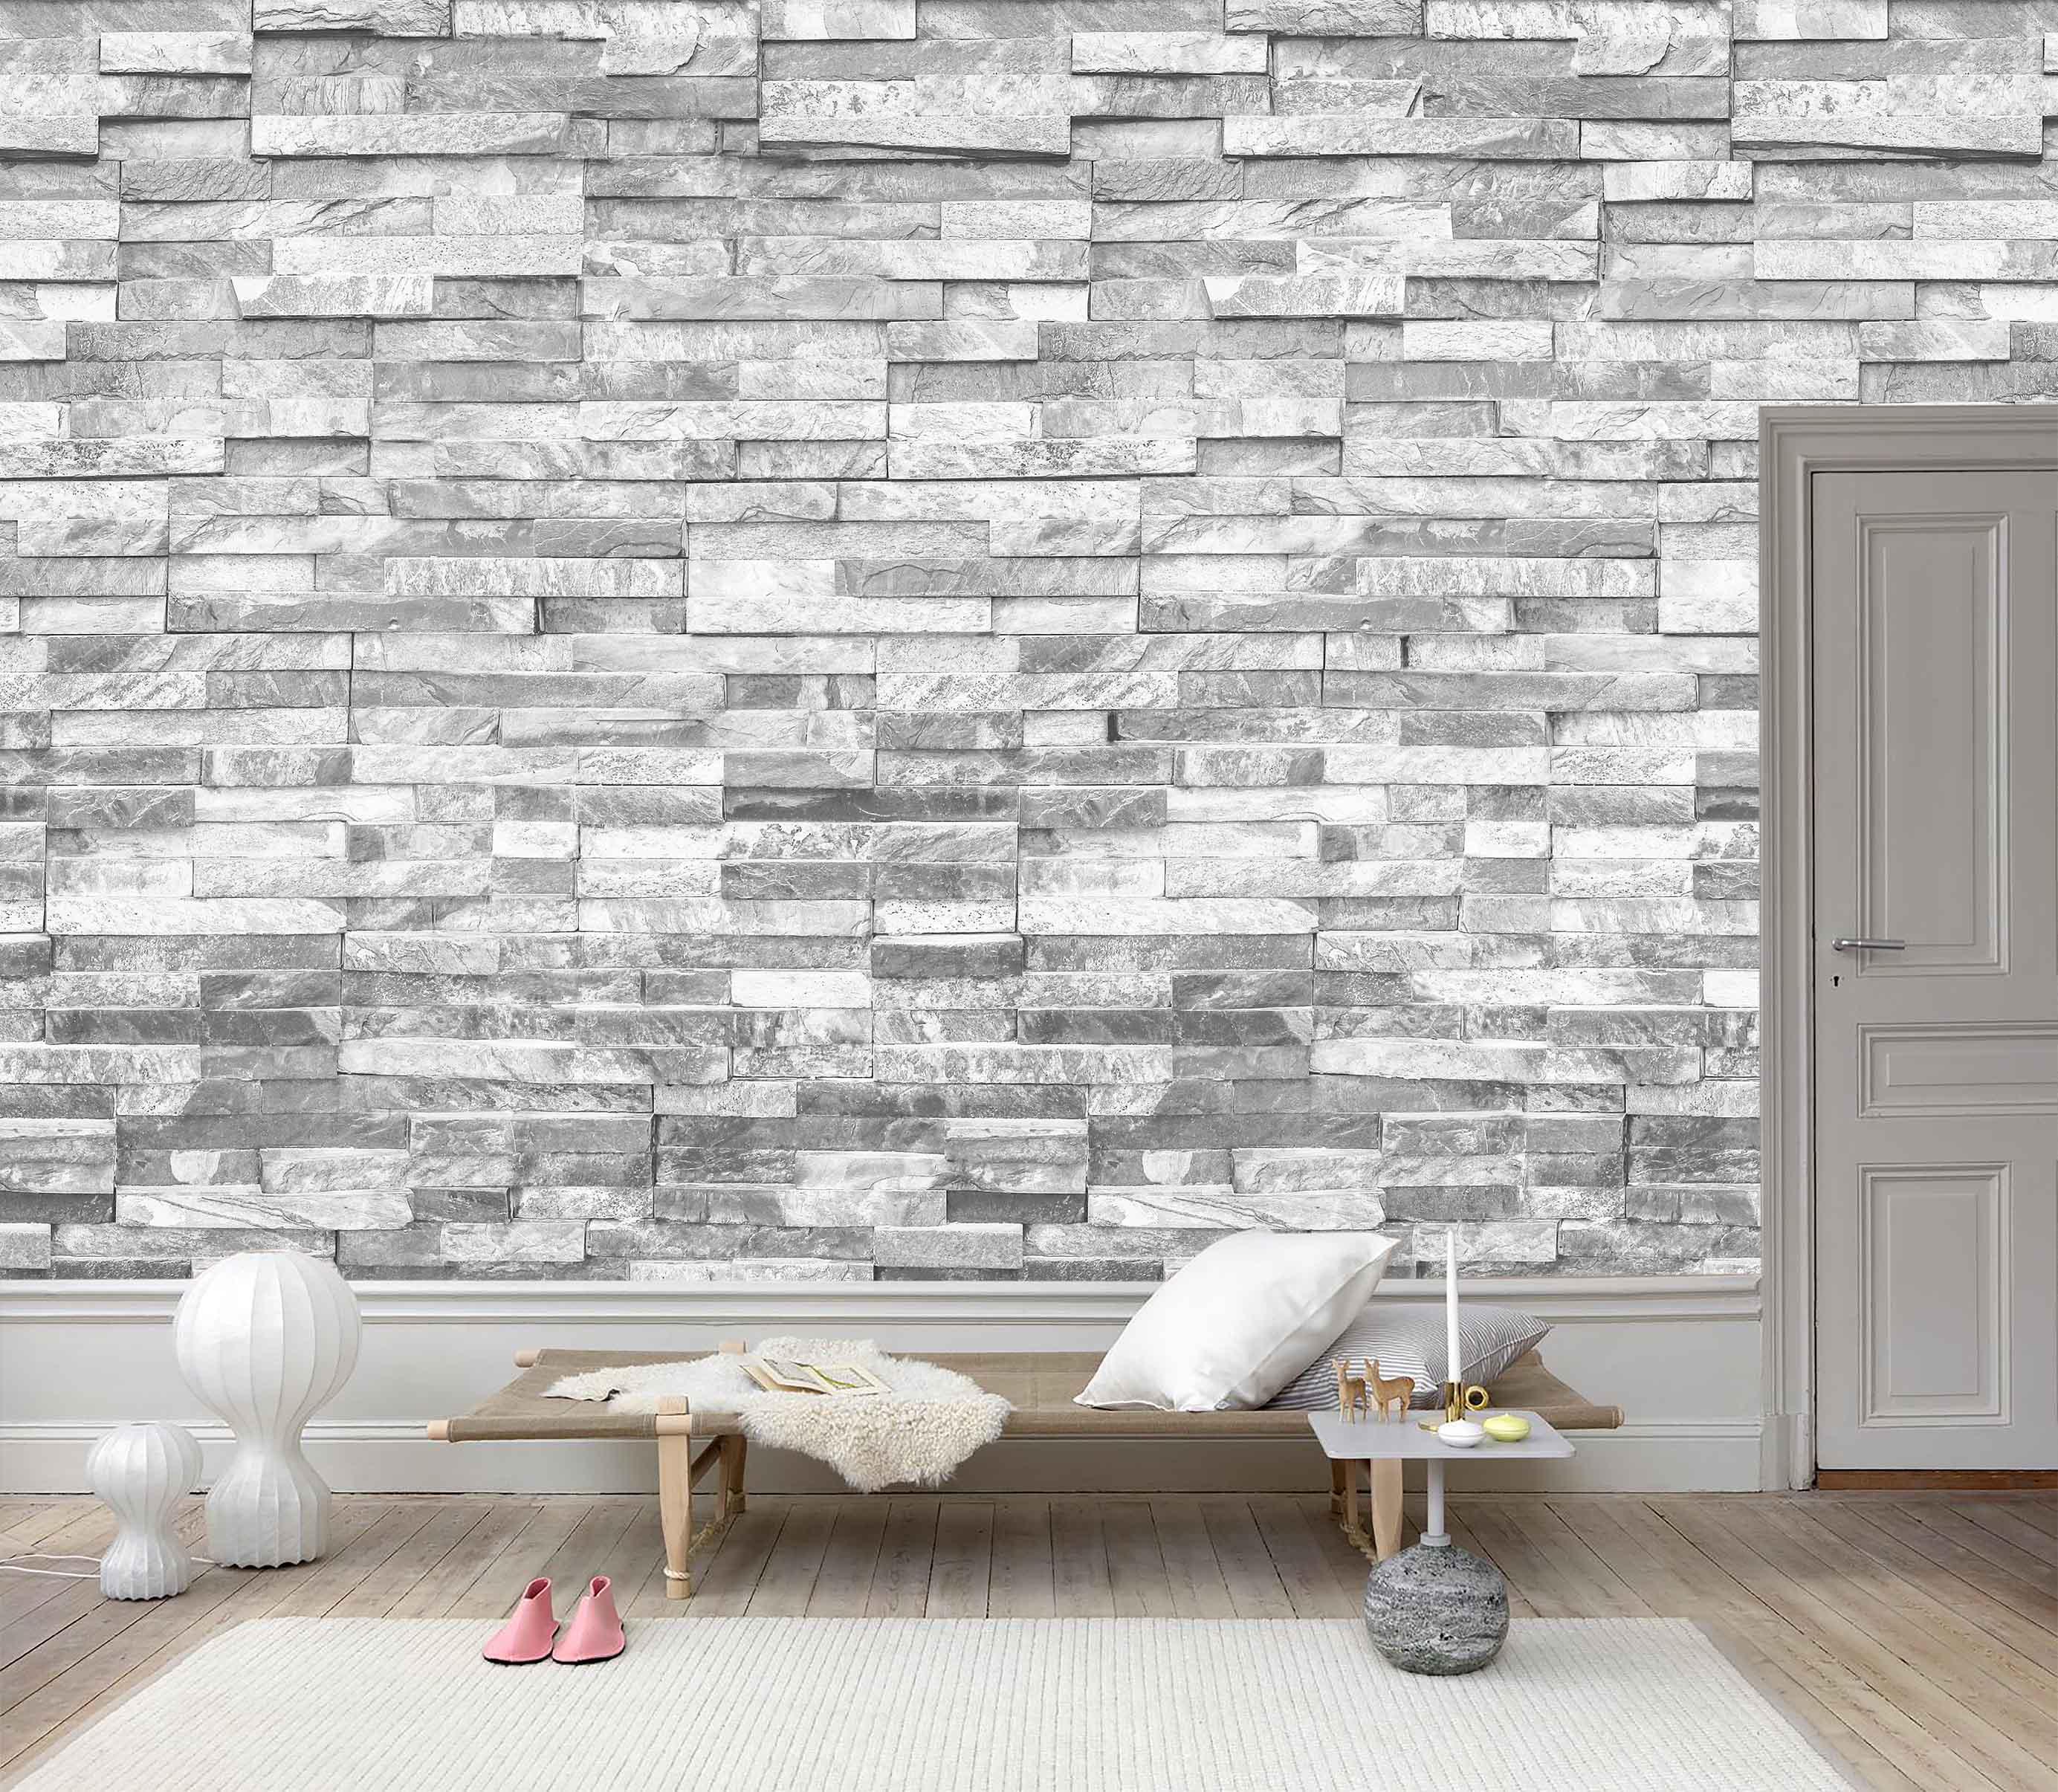 3D Long Stone Wall Effect  Wall Mural Wallpaper 87- Jess Art Decoration